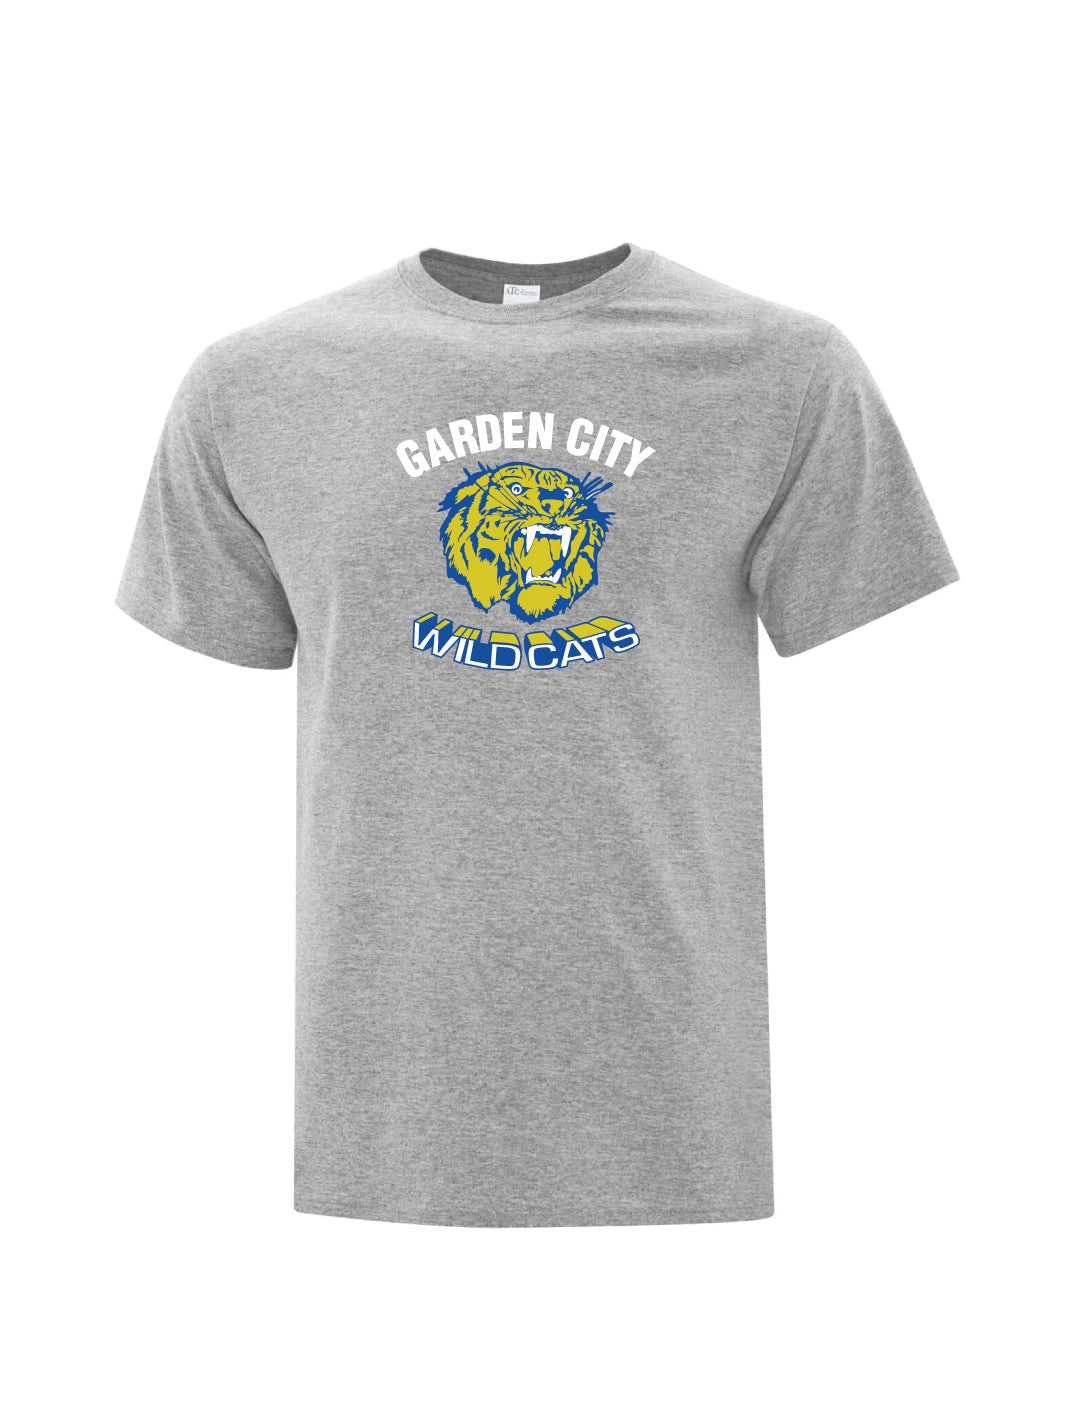 Adult Garden City Wildcats T-shirt - Oddball Workshop